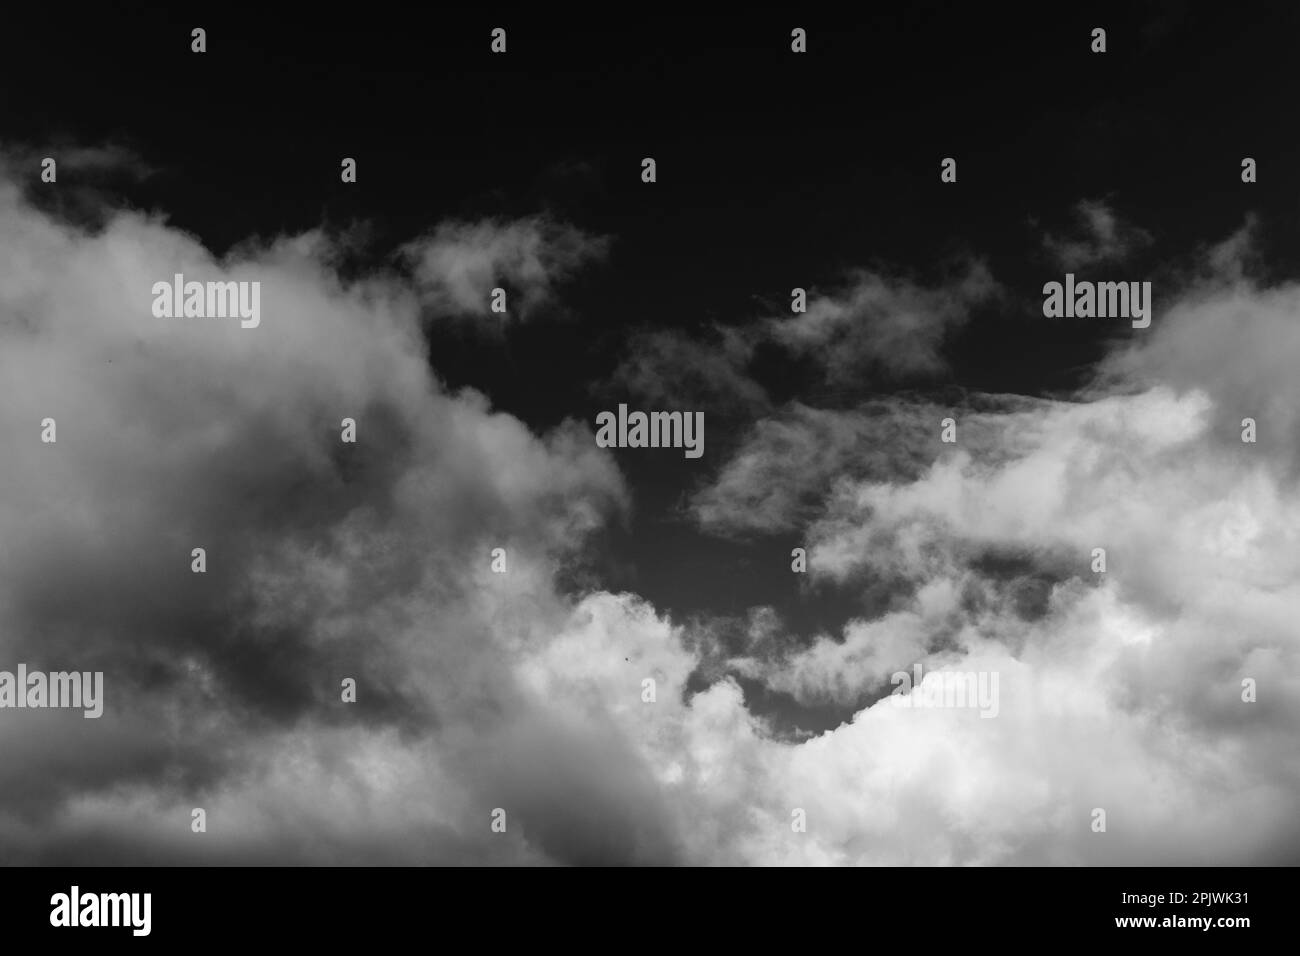 Weißer Dampf, Rauch auf schwarzem Hintergrund, um Ihre Bilder zu ergänzen. Perfekter Rauch, Dampf, Duft, Weihrauch. Erstellen Sie mystische Fotos. Rauchhintergrund Stockfoto